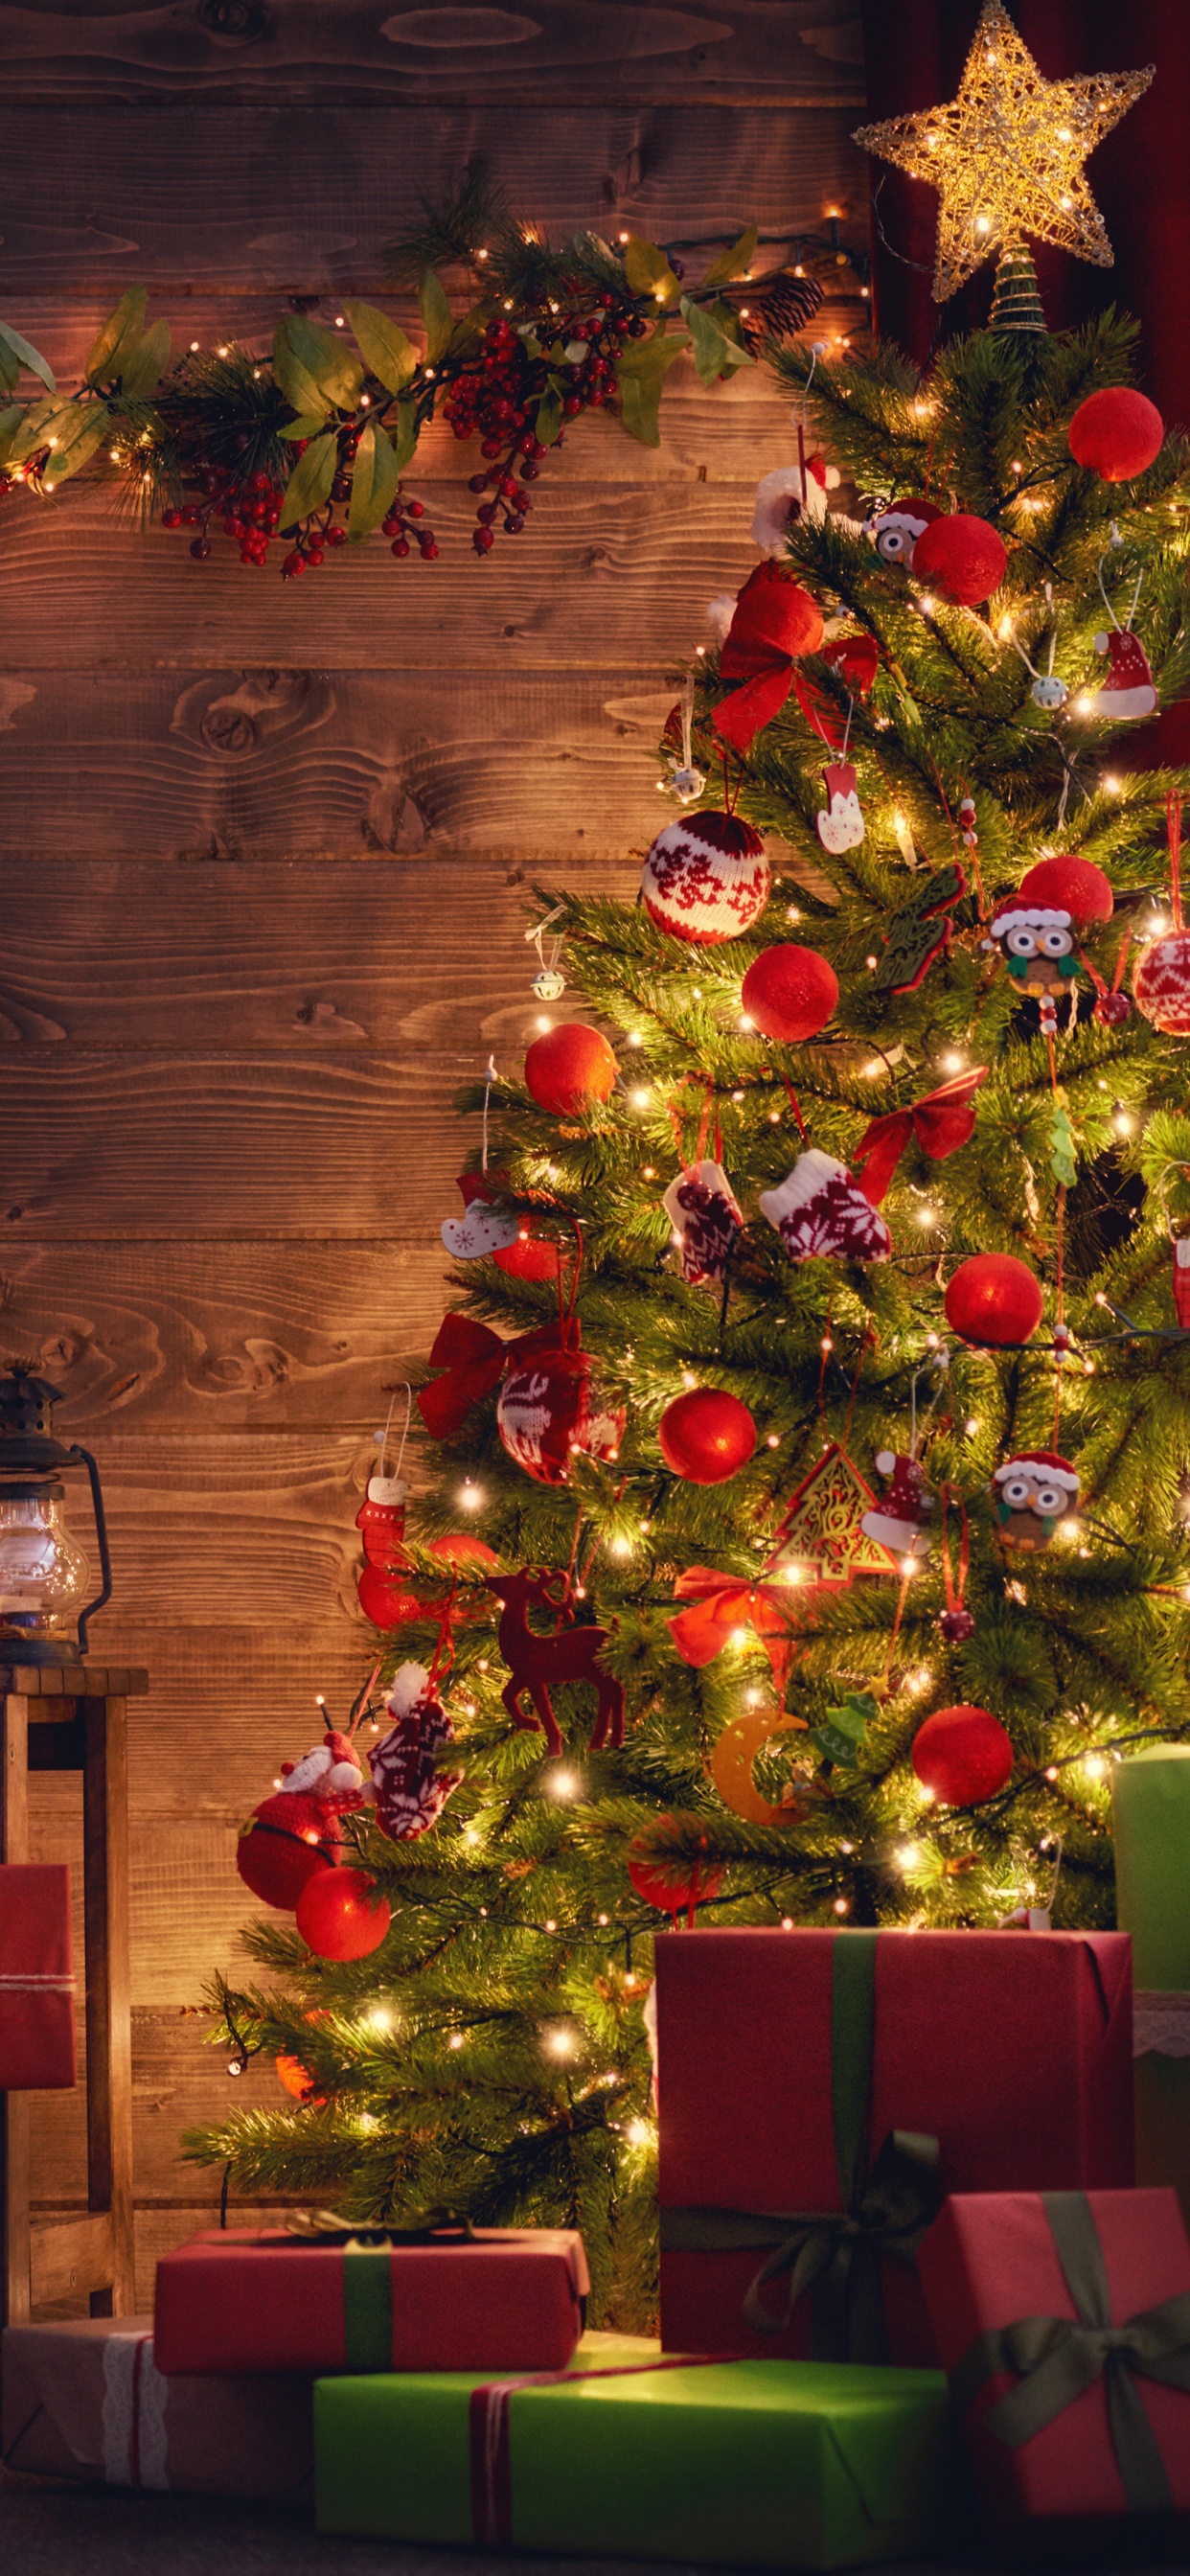 El Día De Navidad, Decoración de la Navidad, Navidad, Luces de Navidad, Calendario de Adviento de Navidad de Madera. Wallpaper in 1242x2688 Resolution